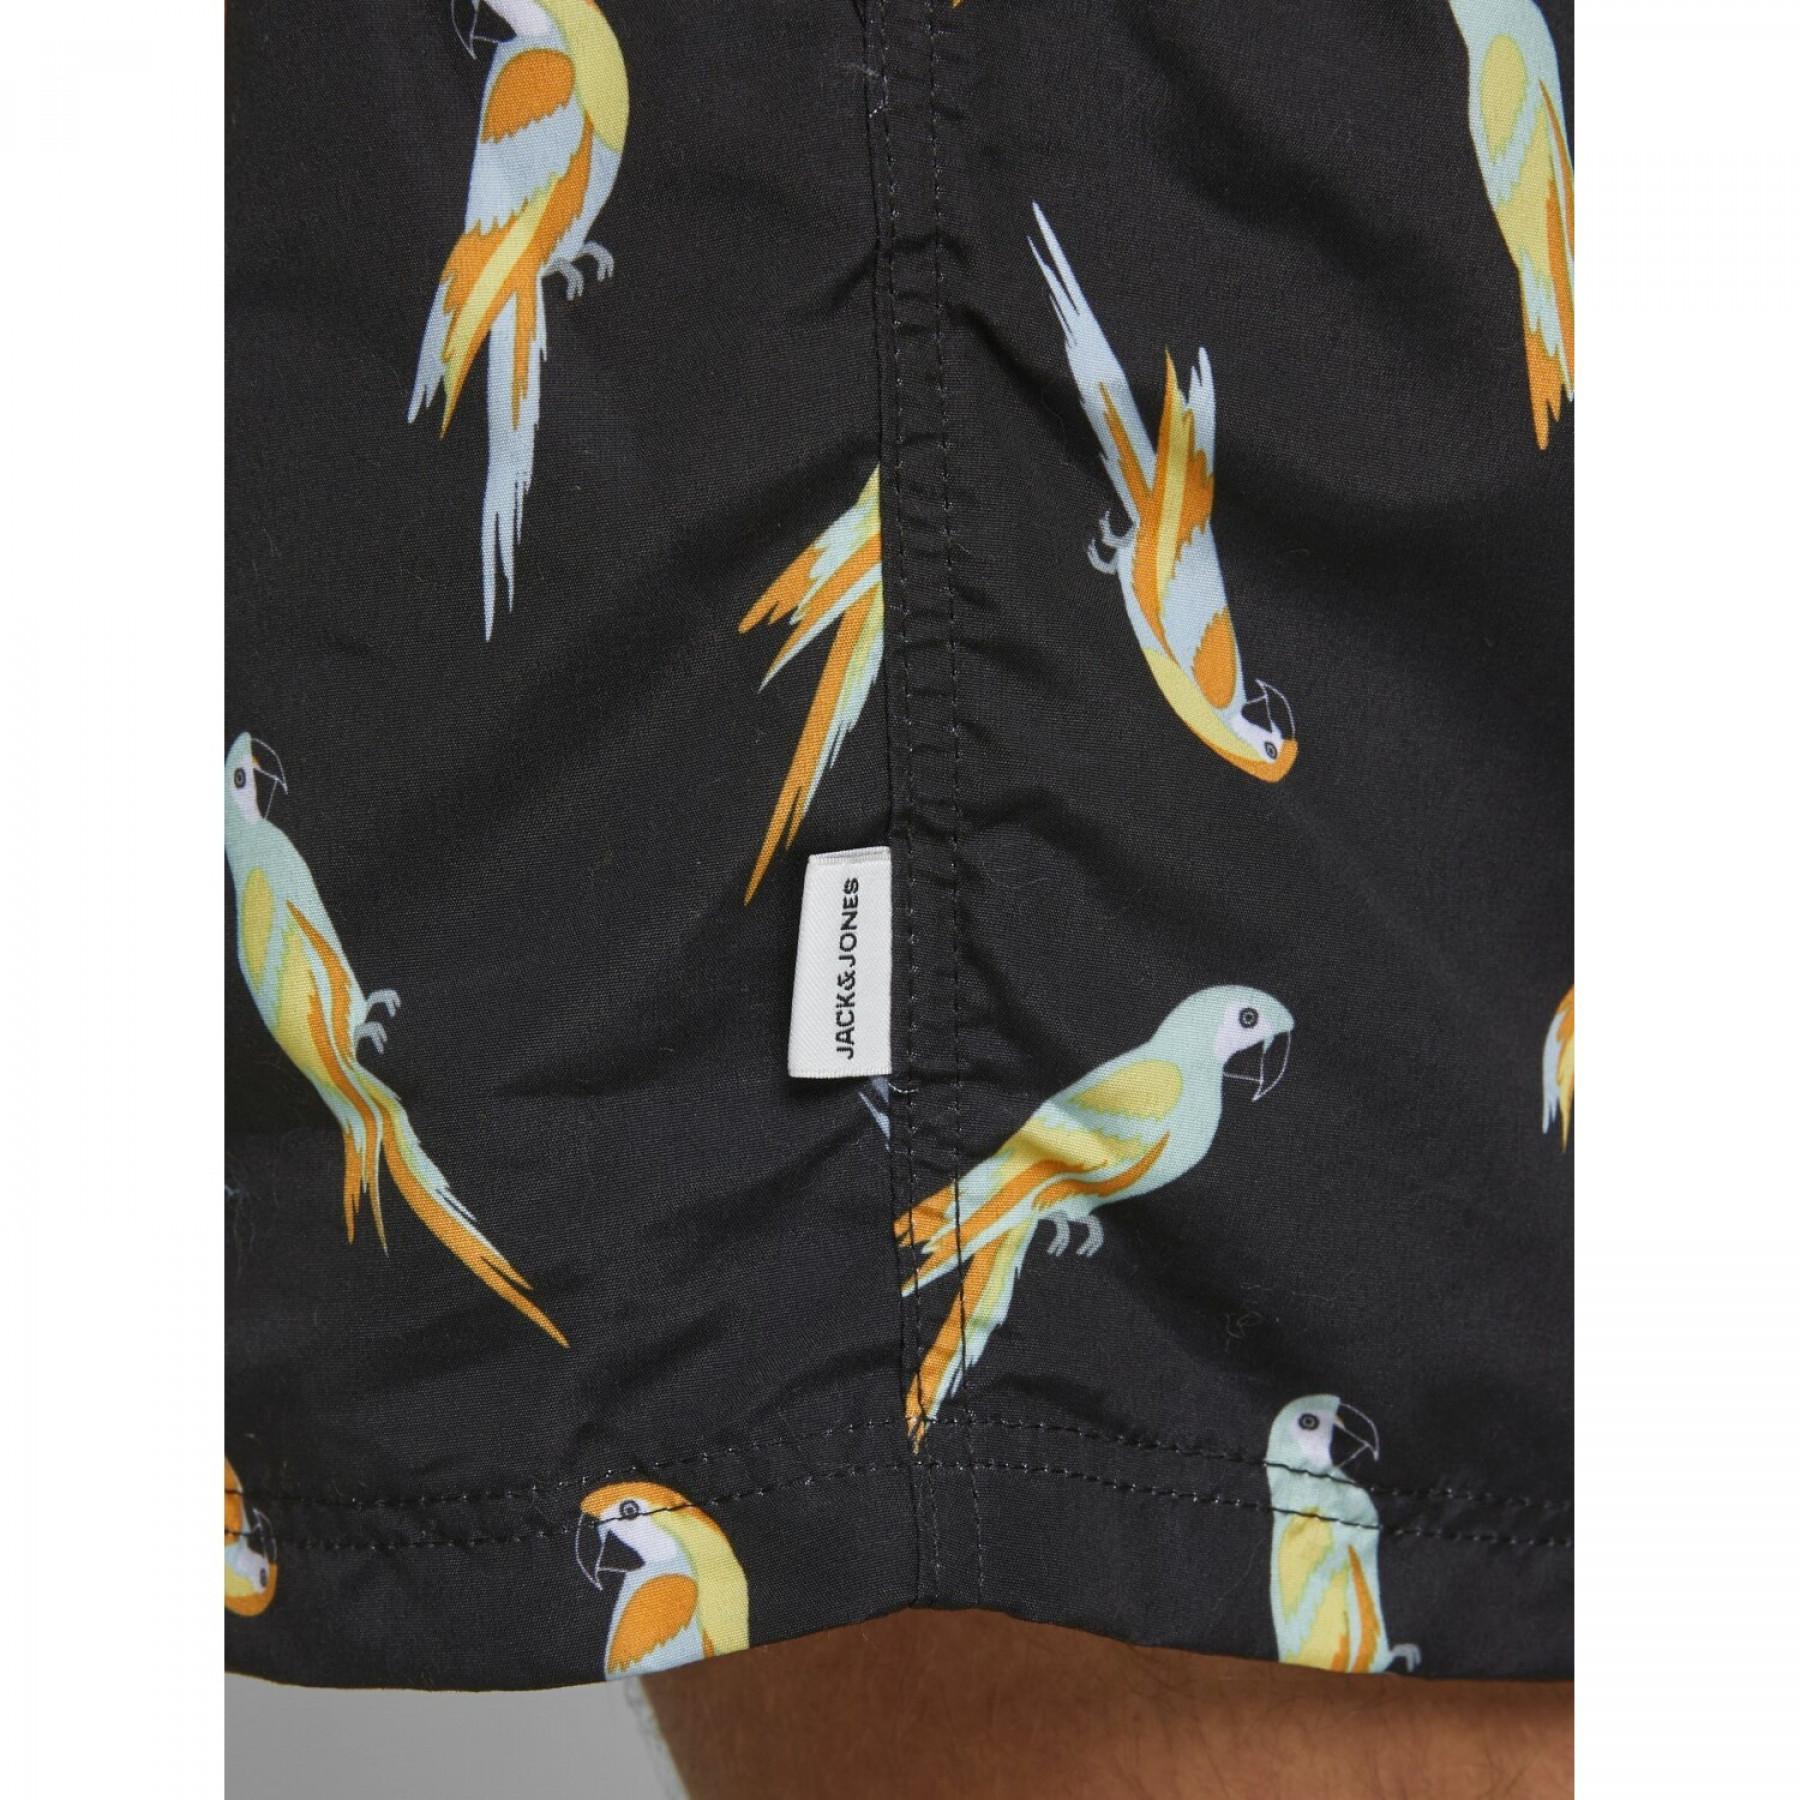 Pantalones cortos de baño Jack & Jones Aruba Animal